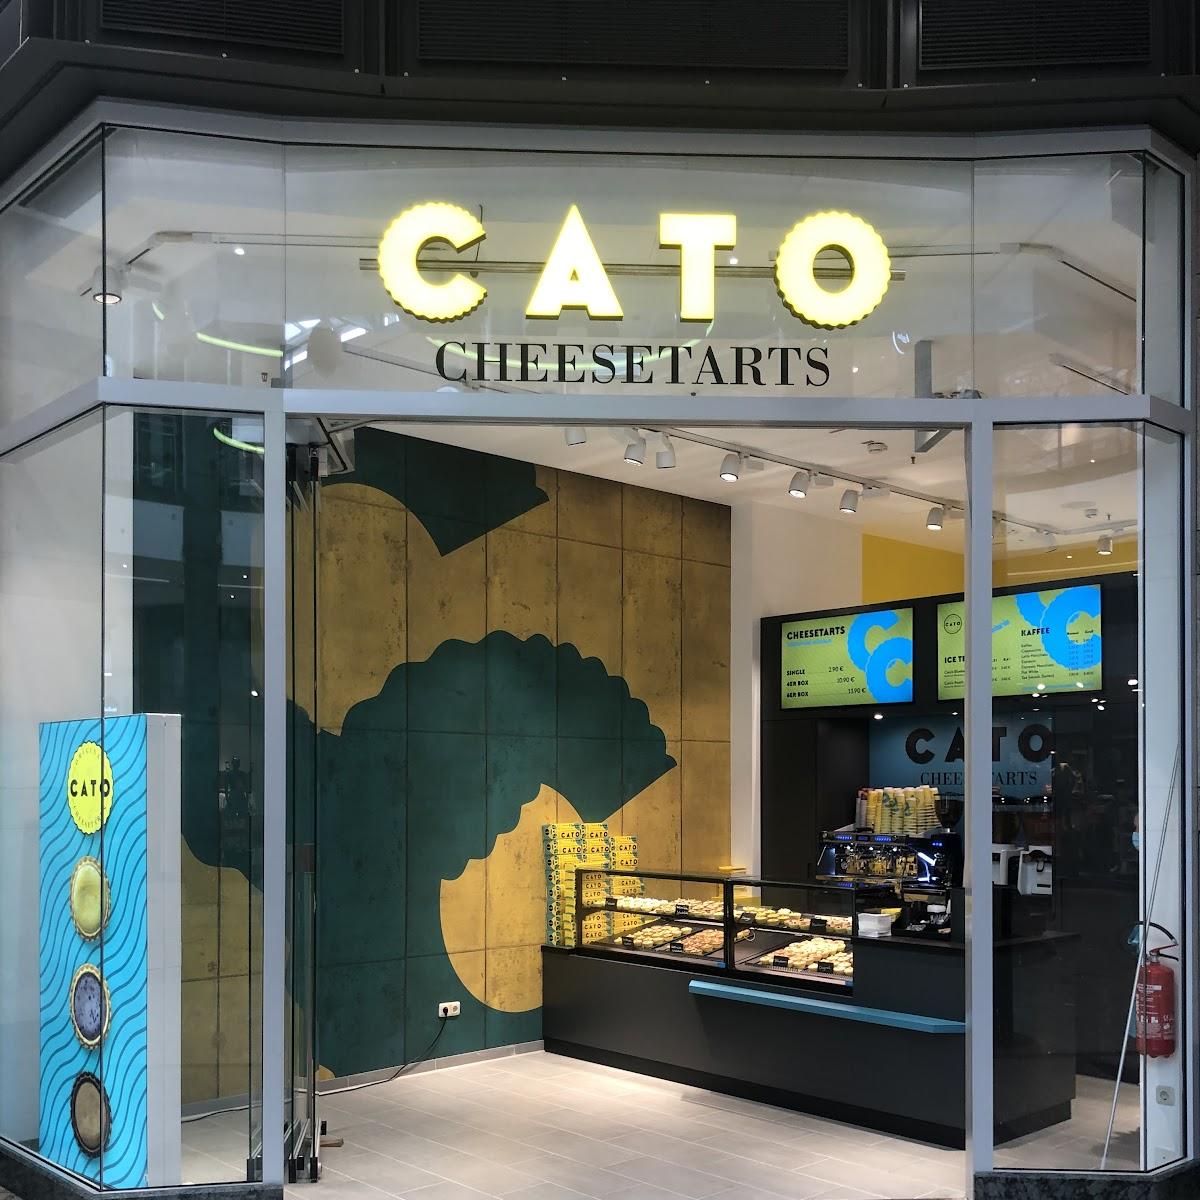 Restaurant "Cato Cheesetarts" in Oberhausen